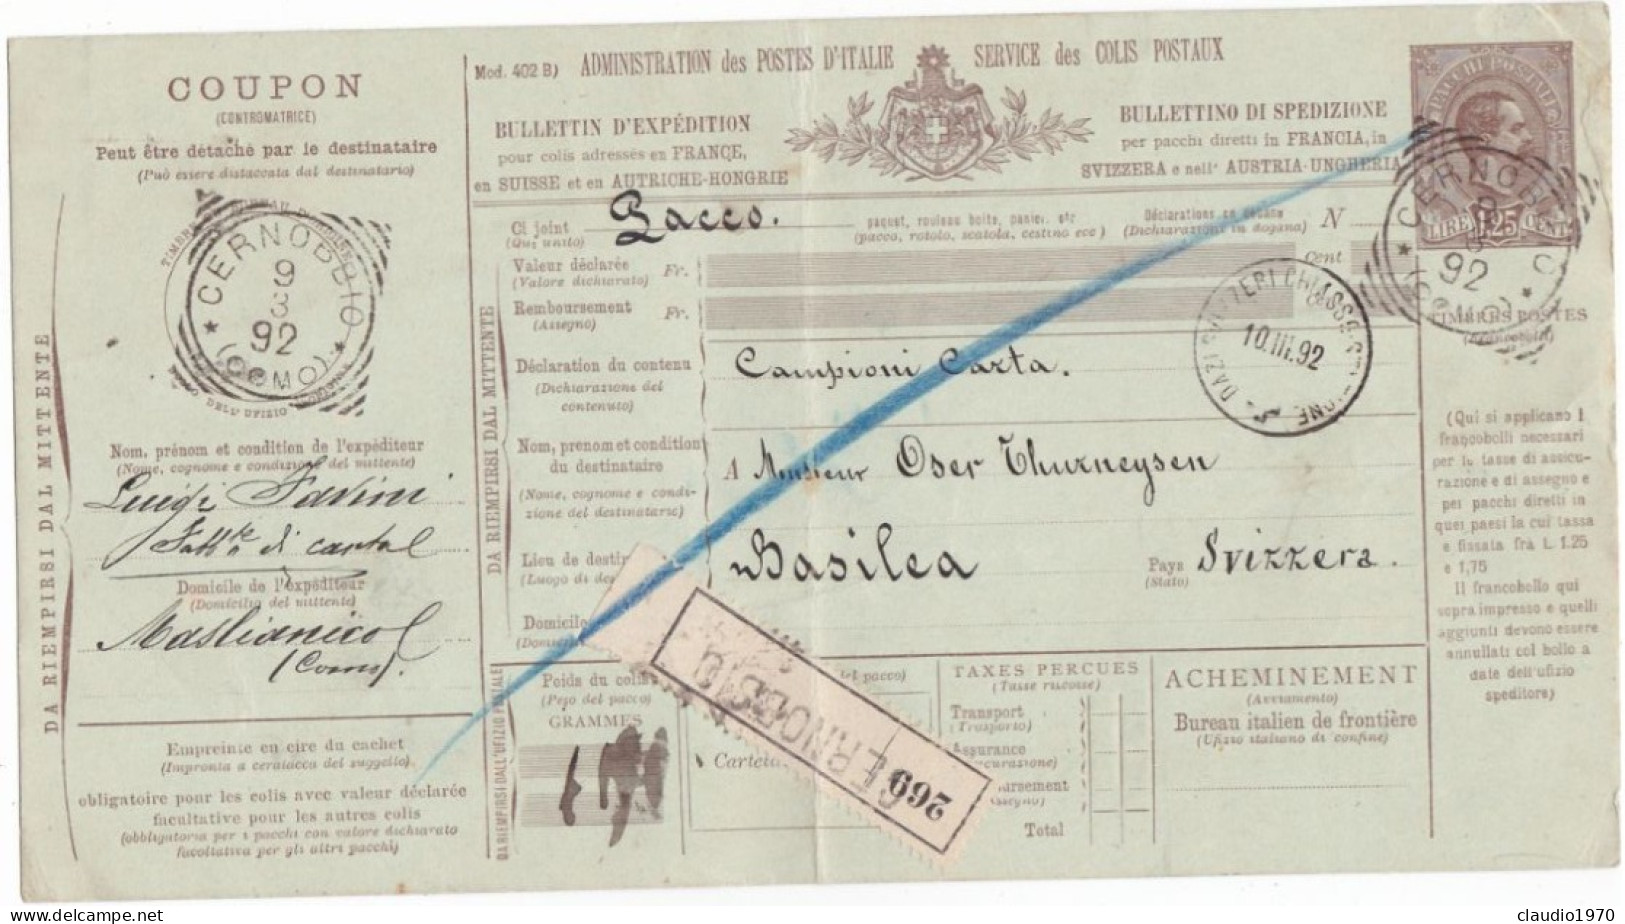 ITALIA - REGNO - CERNOBBIO (COMO) - BOLLETTINI PACCHI POSTALE L.1,25 - VIAGGIATO PER CHIASSO - SVIZZERA - 1892  - P. 9 - Postal Parcels